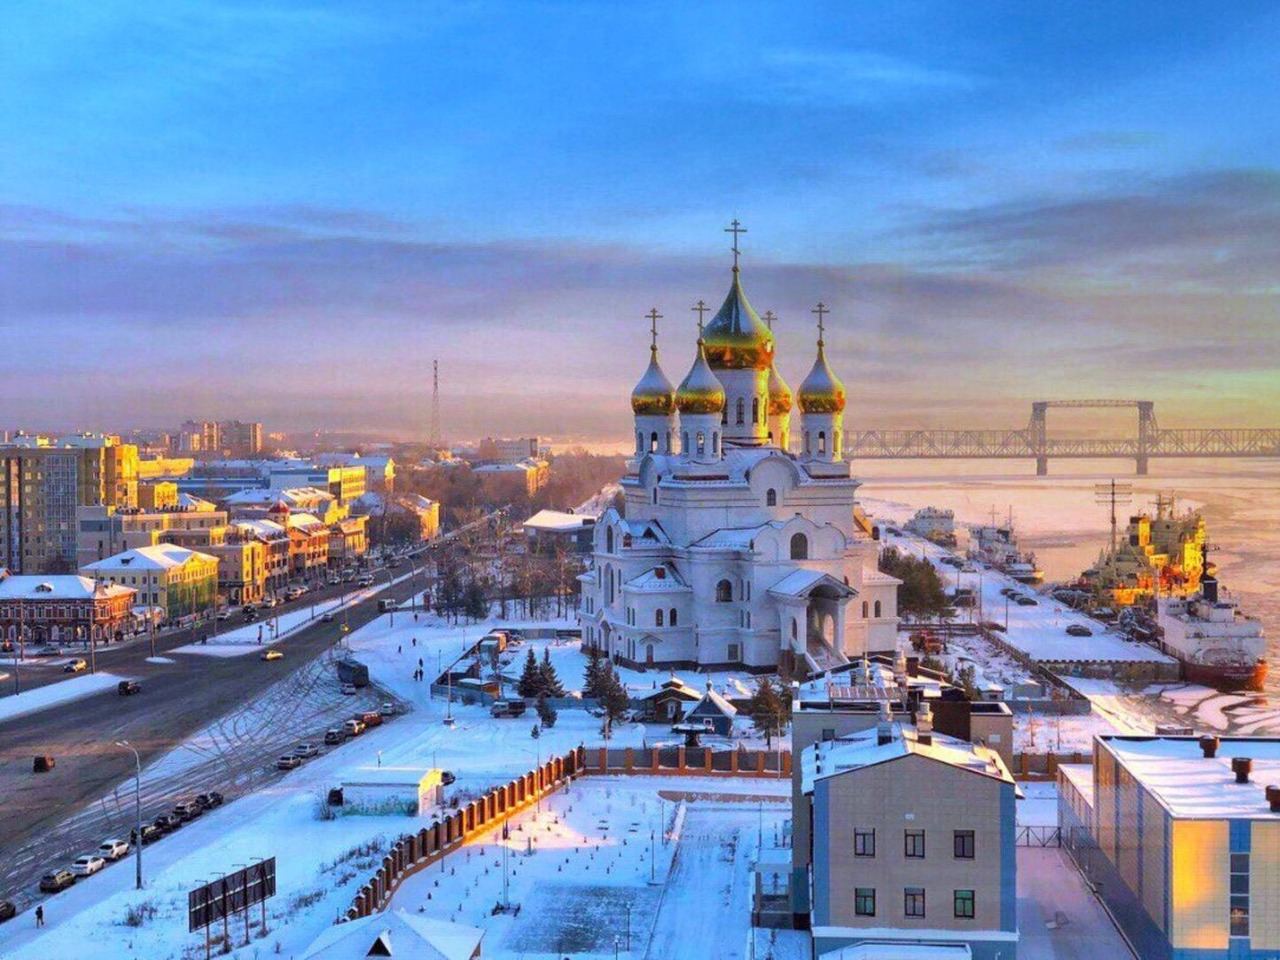 Архангельск — первое окно из России в Европу | Цена 4000₽, отзывы, описание экскурсии